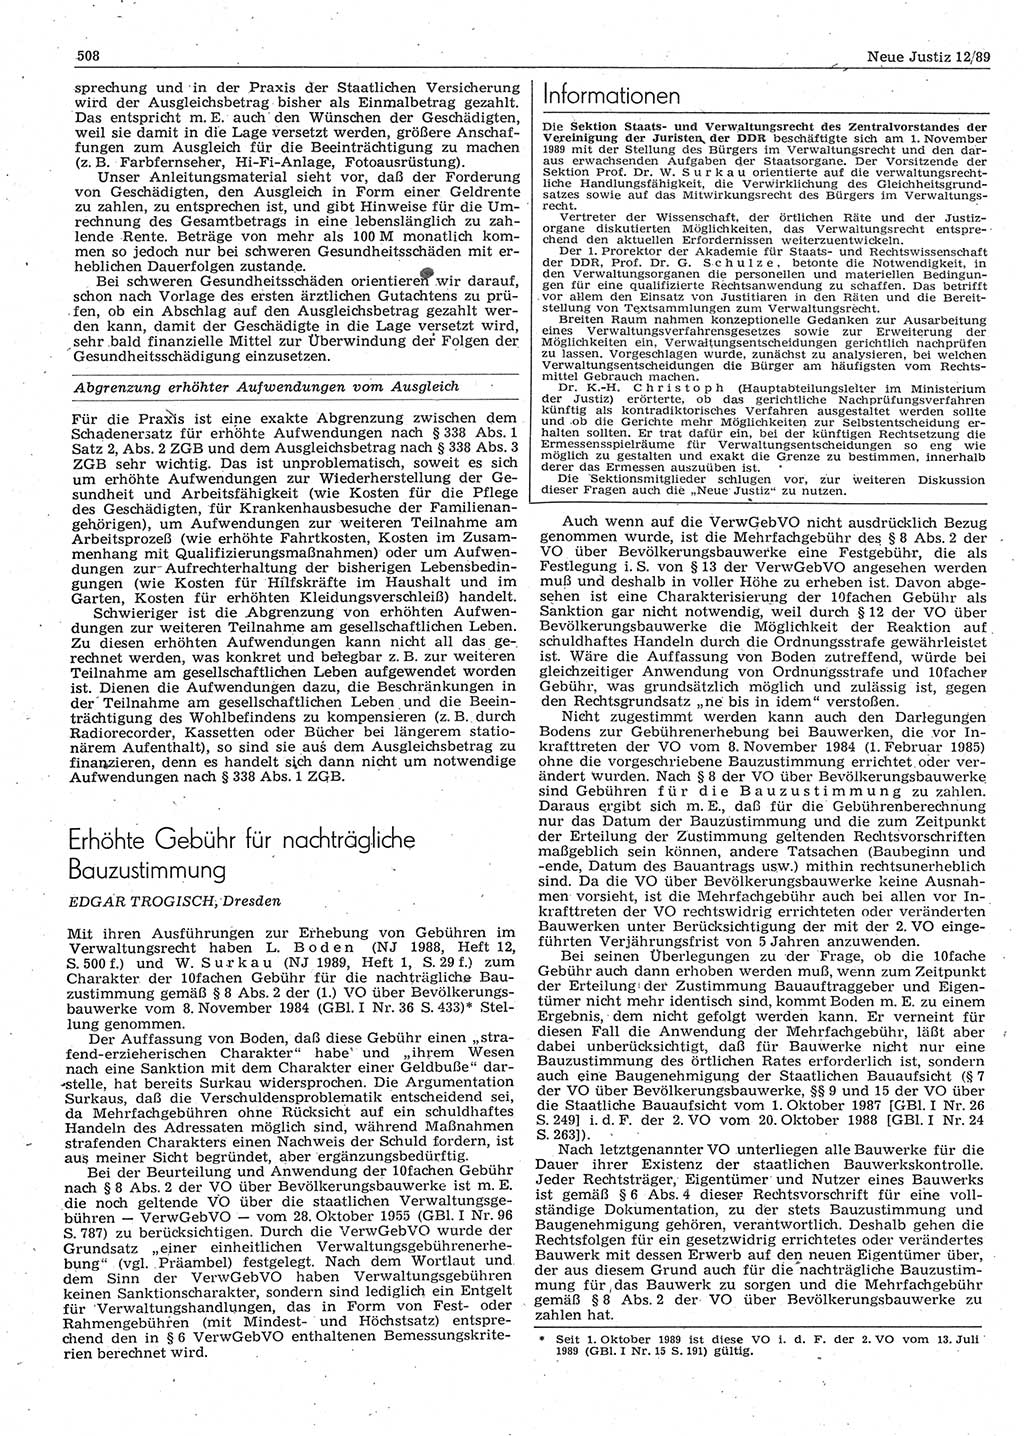 Neue Justiz (NJ), Zeitschrift für sozialistisches Recht und Gesetzlichkeit [Deutsche Demokratische Republik (DDR)], 43. Jahrgang 1989, Seite 508 (NJ DDR 1989, S. 508)